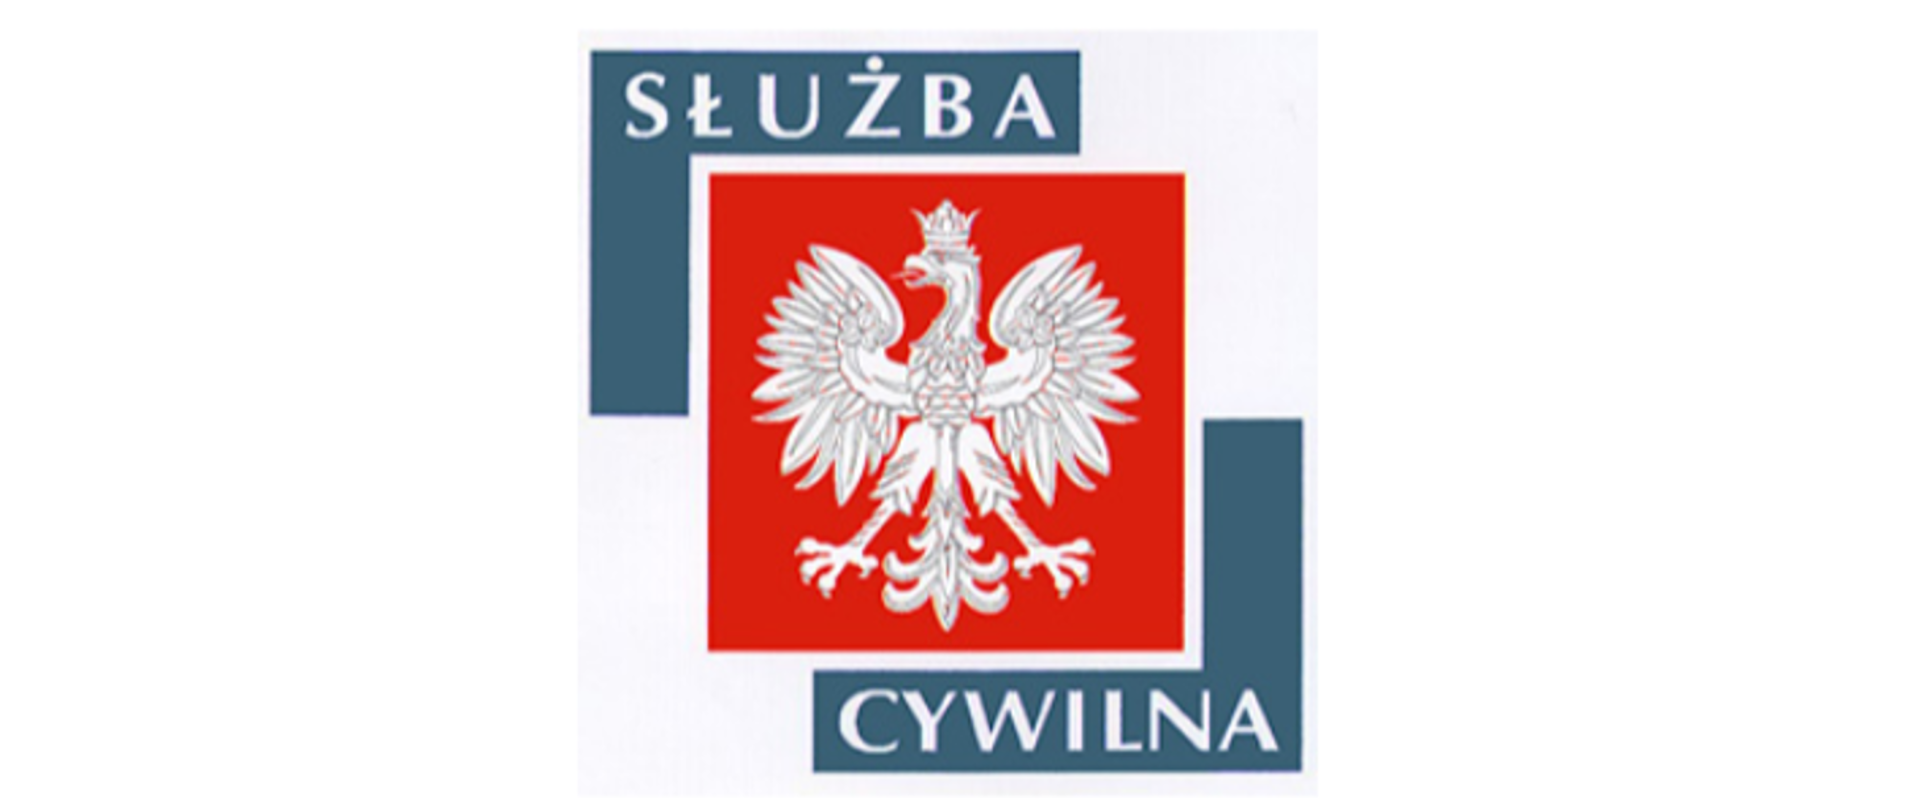 Służba cywilna logo